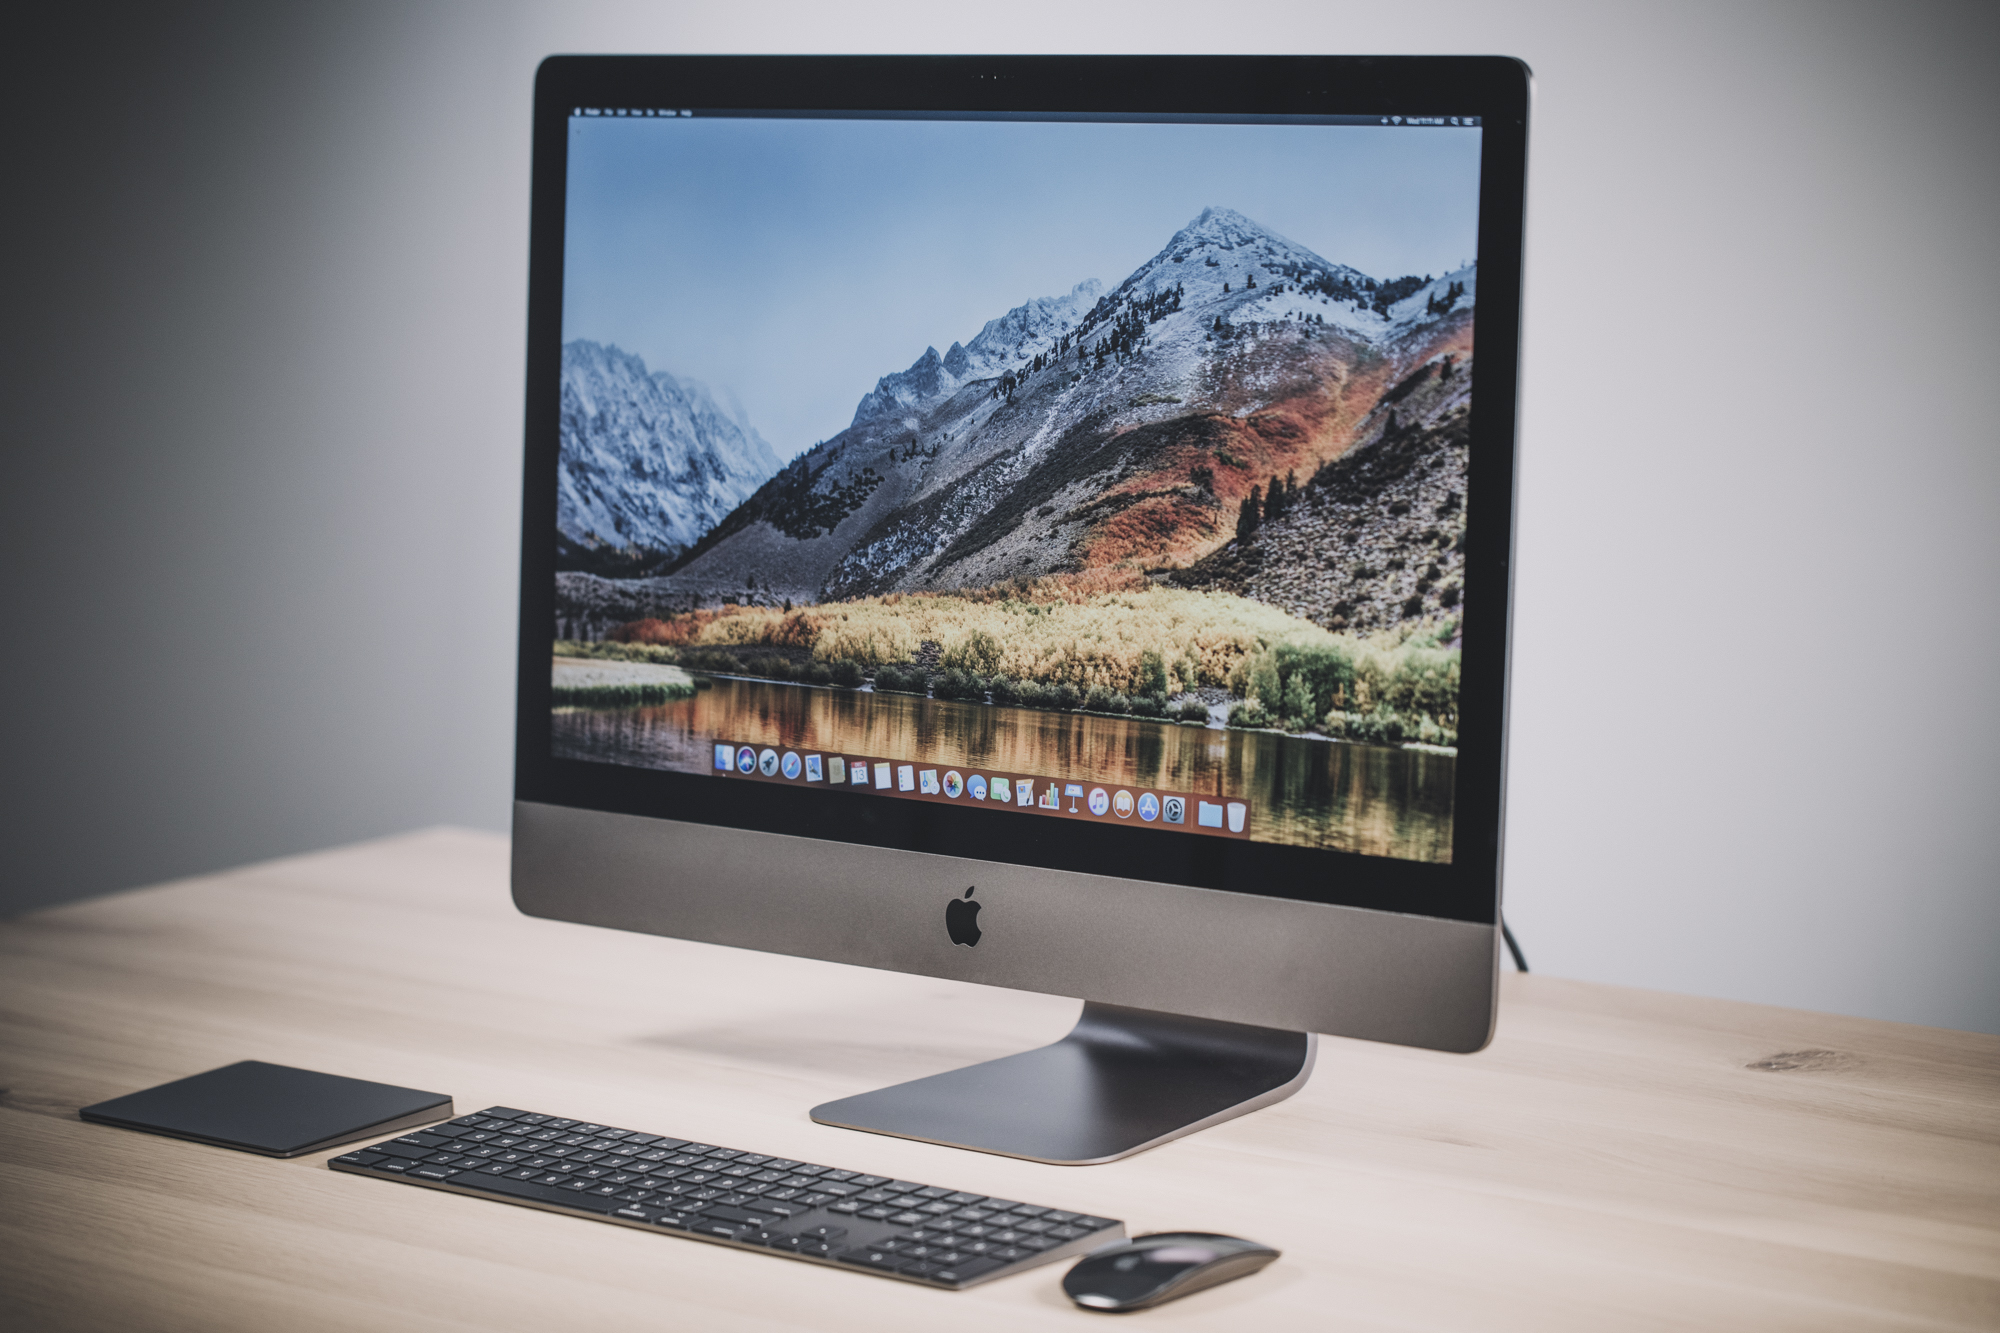 he equivocado Color de malva Deportes The iMac Pro is being discontinued | TechCrunch